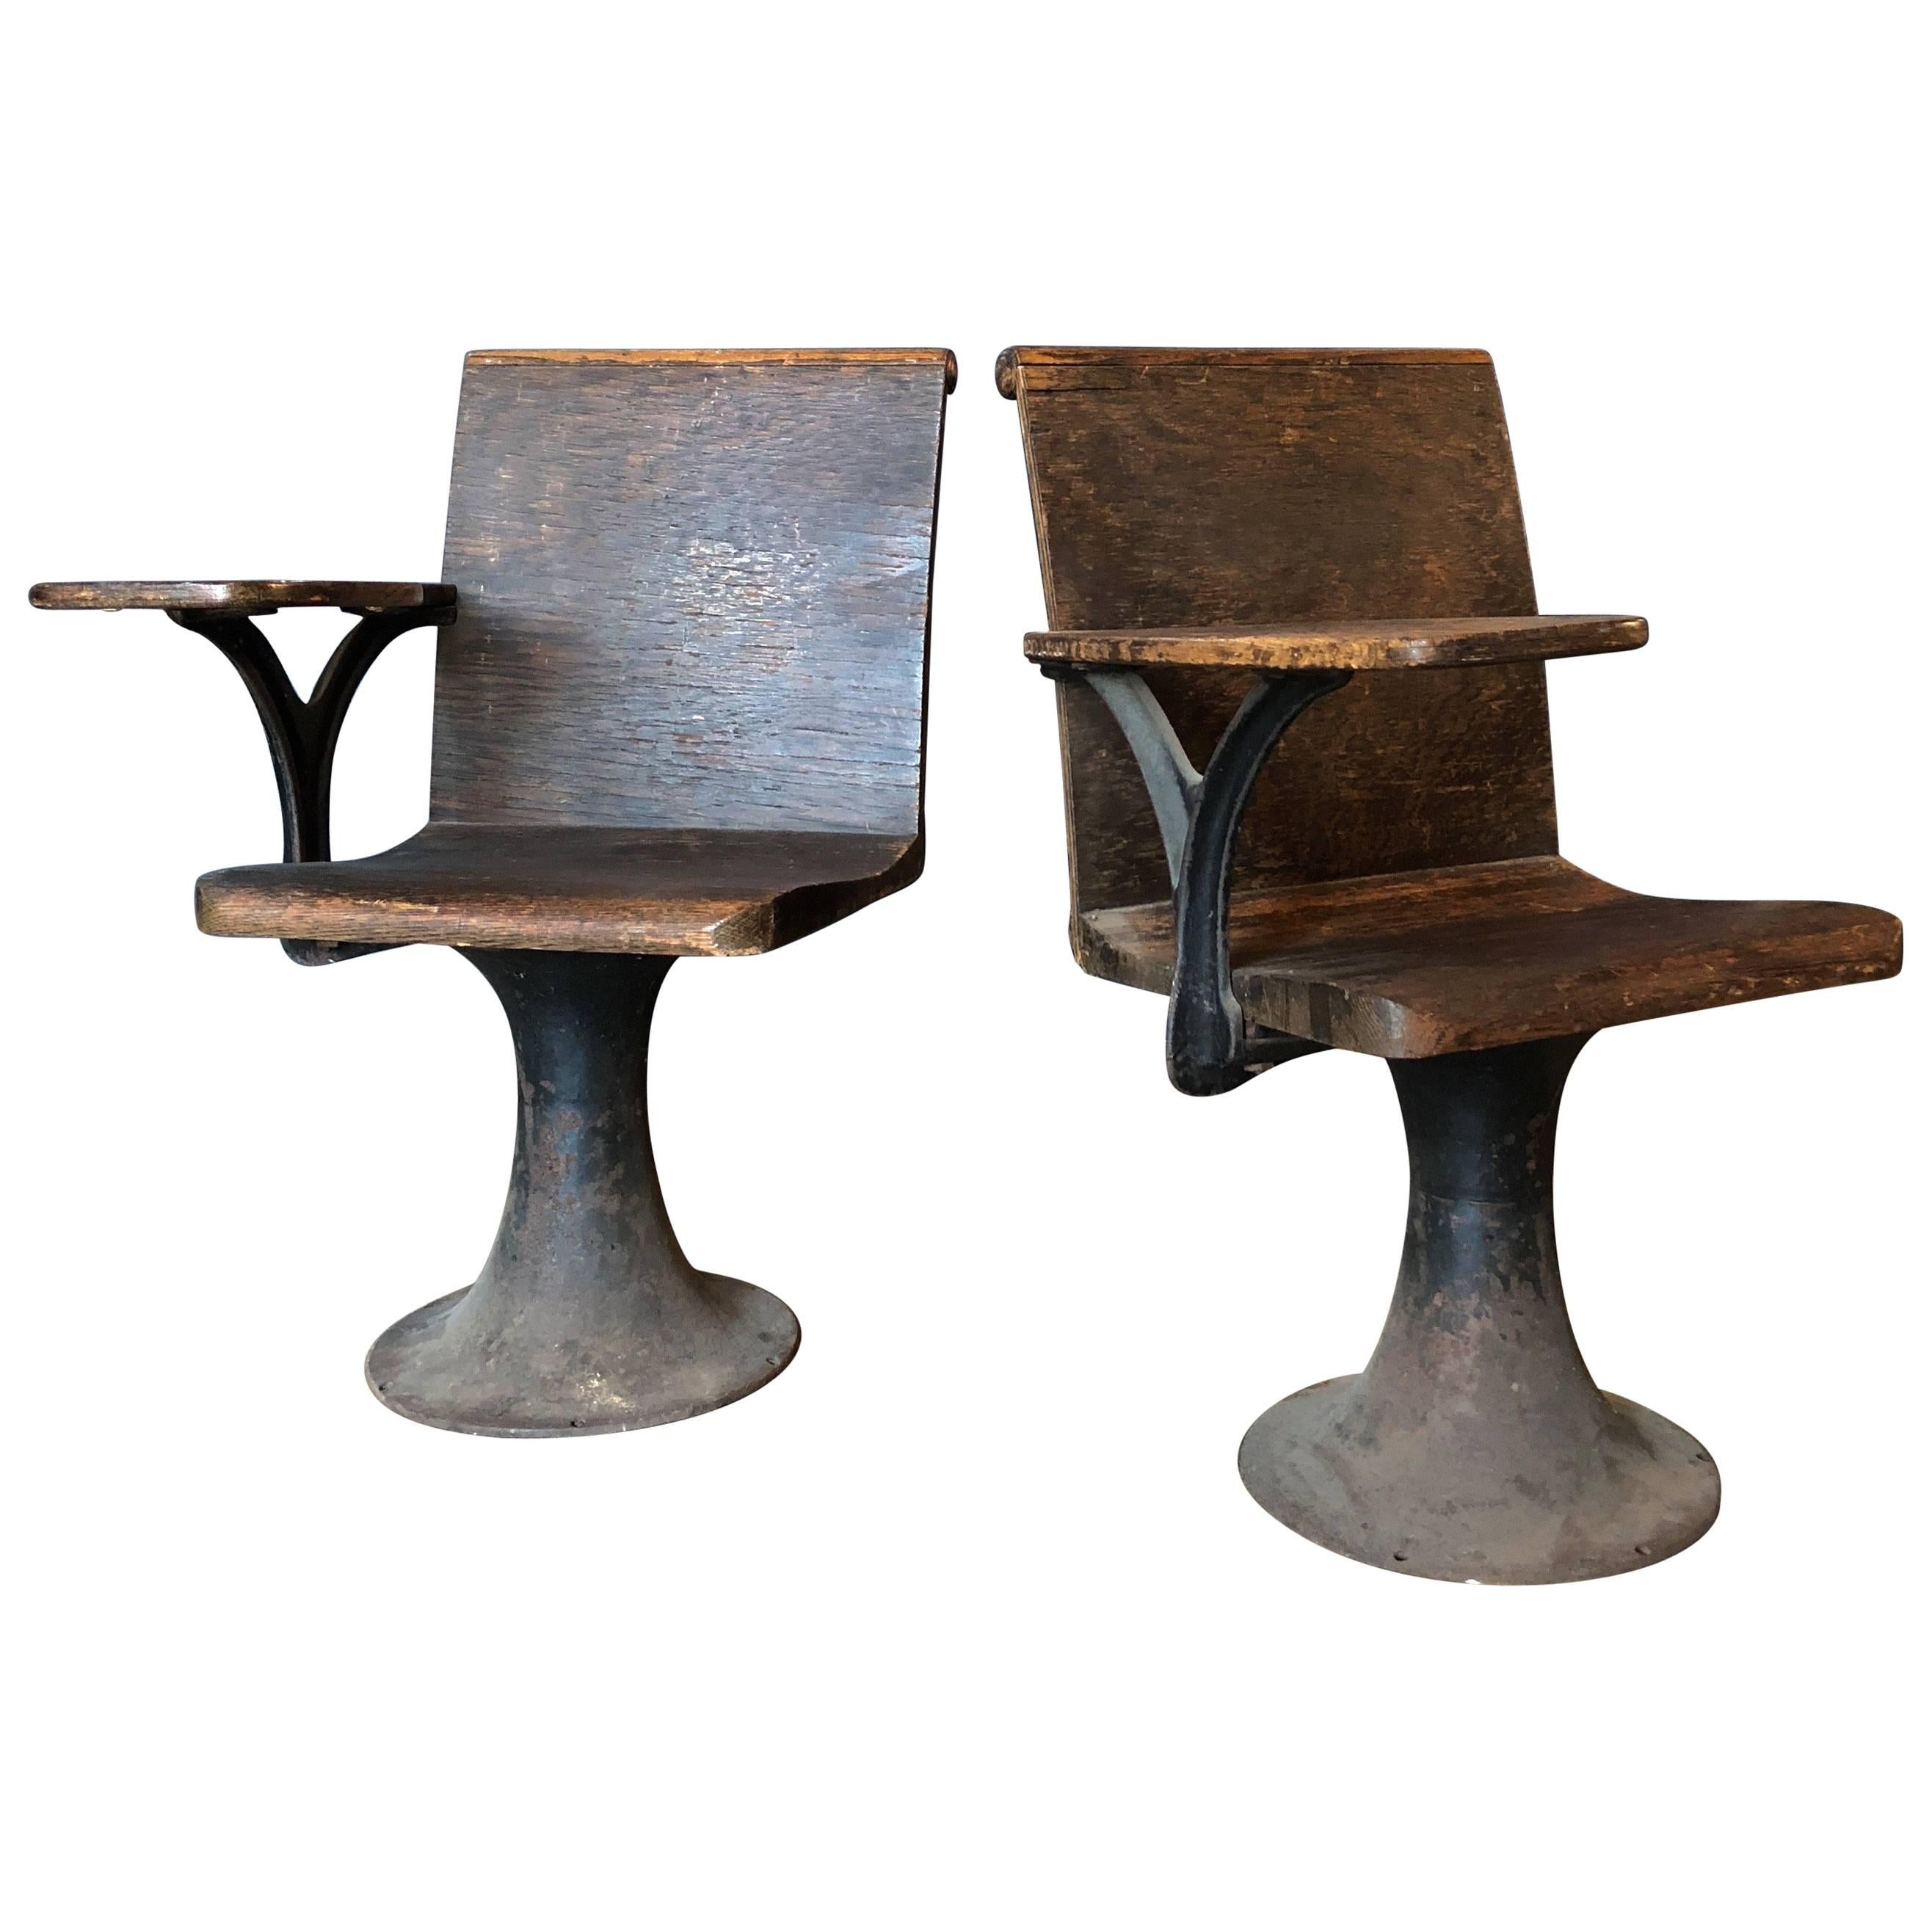 Pair of Vintage Industrial 1920s School Chairs